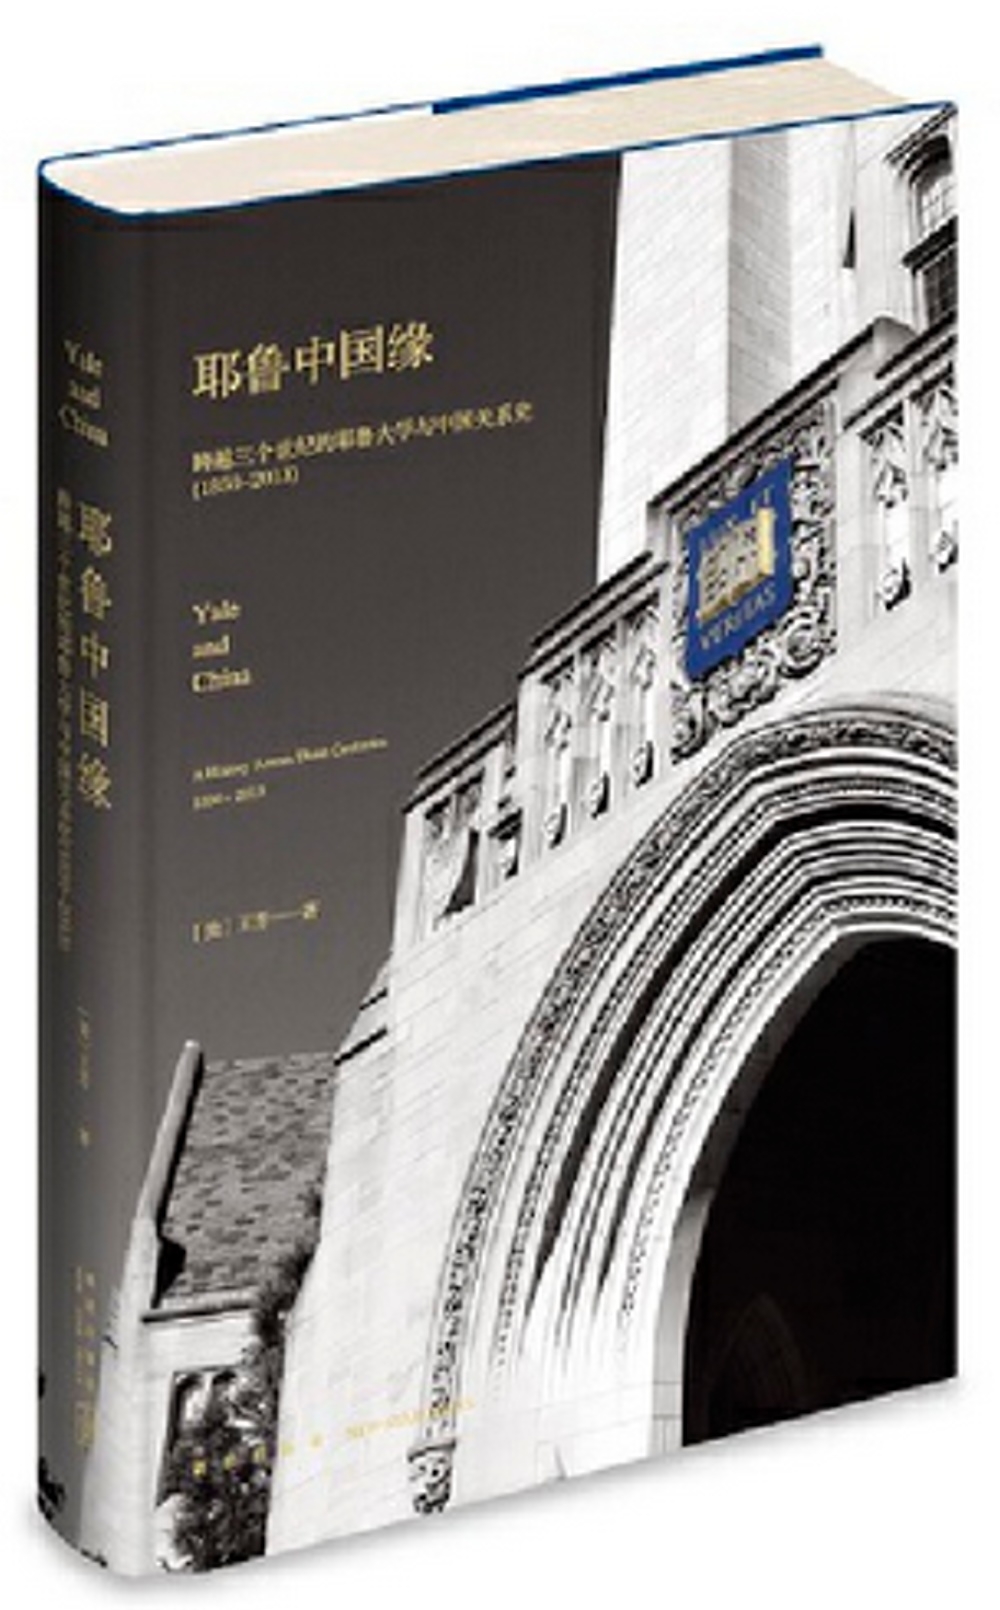 耶魯中國緣：跨越三個世紀的耶魯大學與中國關係史（1850-2013）